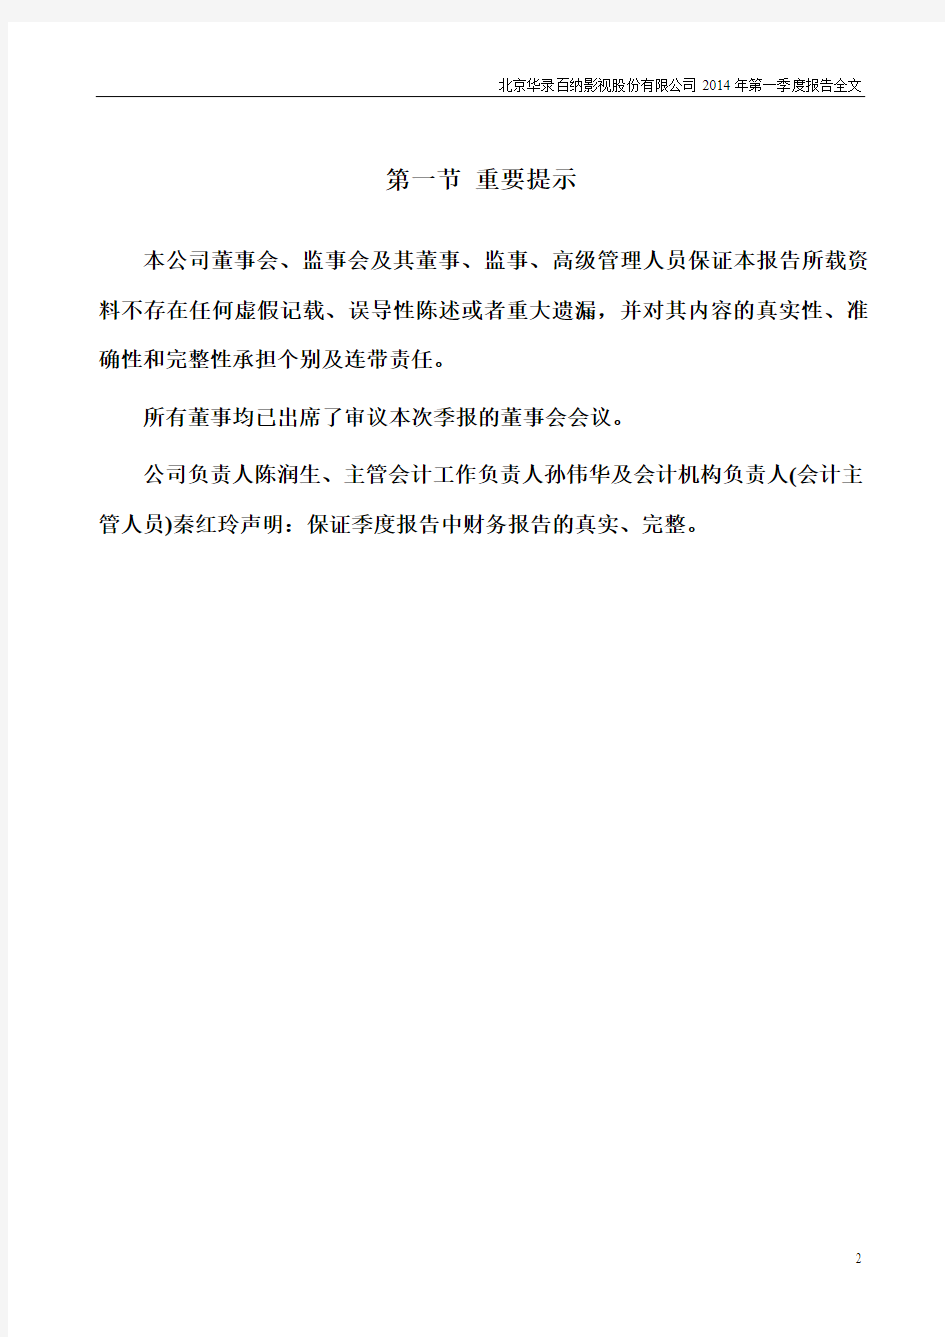 北京华录百纳影视股份有限公司2014年第一季度报告全文